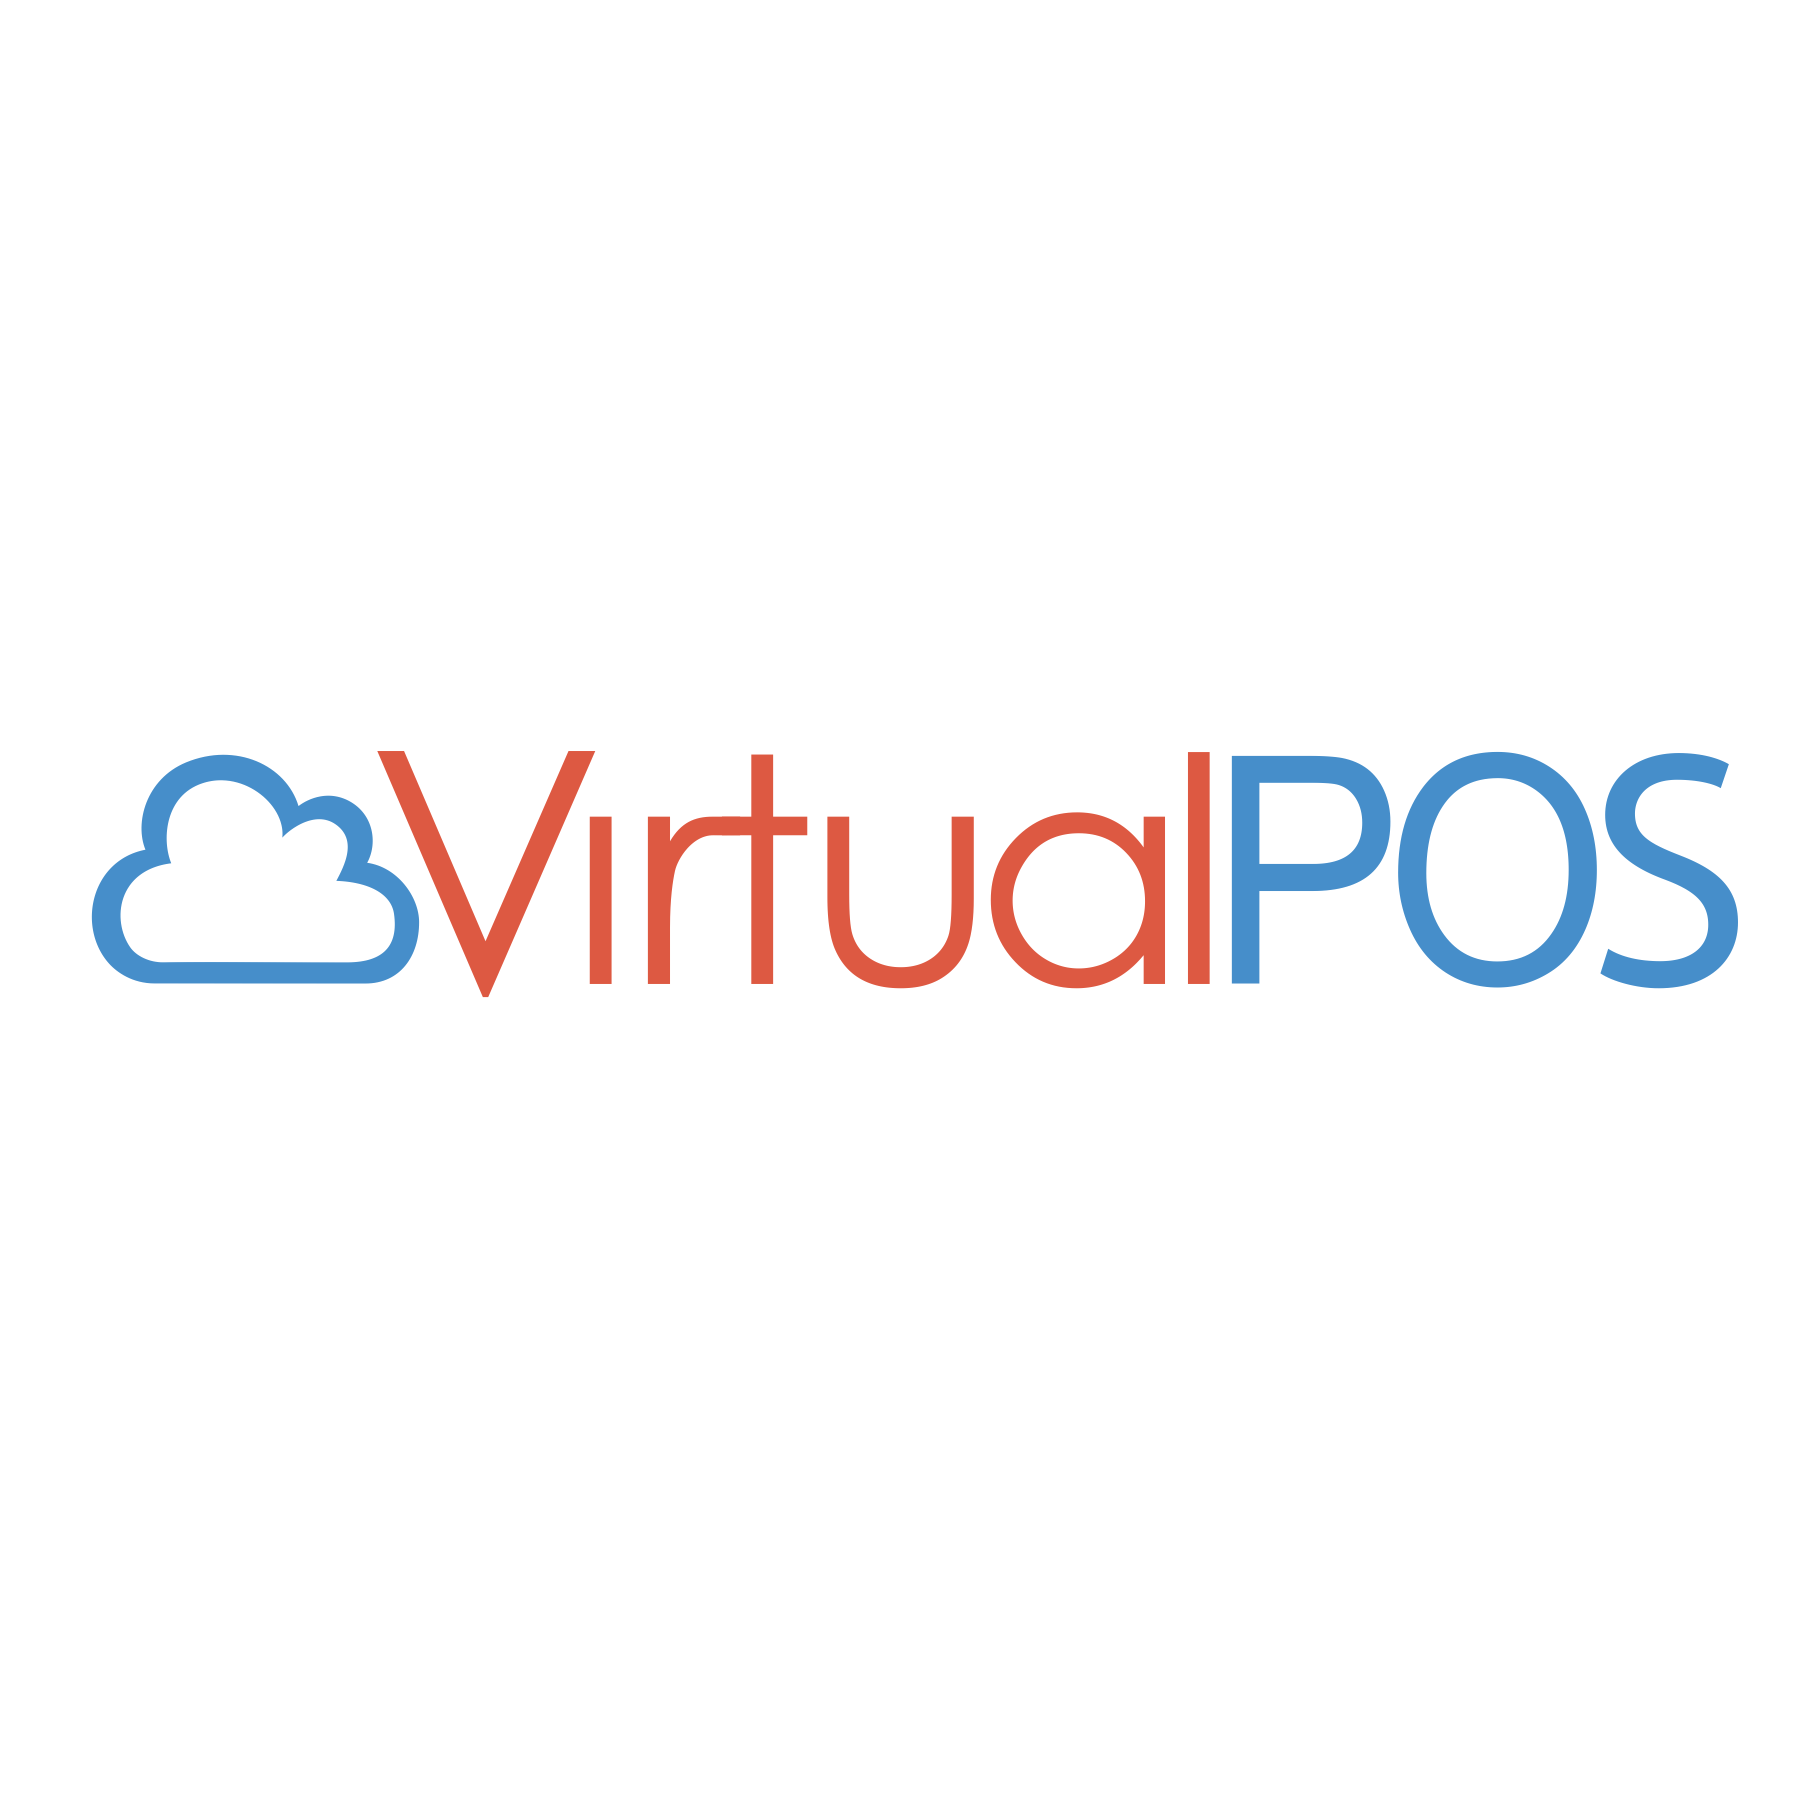 Компания «ВиртуалПос» совсем молодая (образована в марте 2015 года), но очень амбициозная. Коллектив компании уже имеет богатый опыт в различных сферах IT-бизнеса. В планах компании — выход на международный рынок программного обеспечения для розничных магазинов.
Акционерное Общество «ВиртуалПос» ­ команда единомышленников, создающих и продвигающих на рынок IT инновационный облачный сервис «VirtualPos».